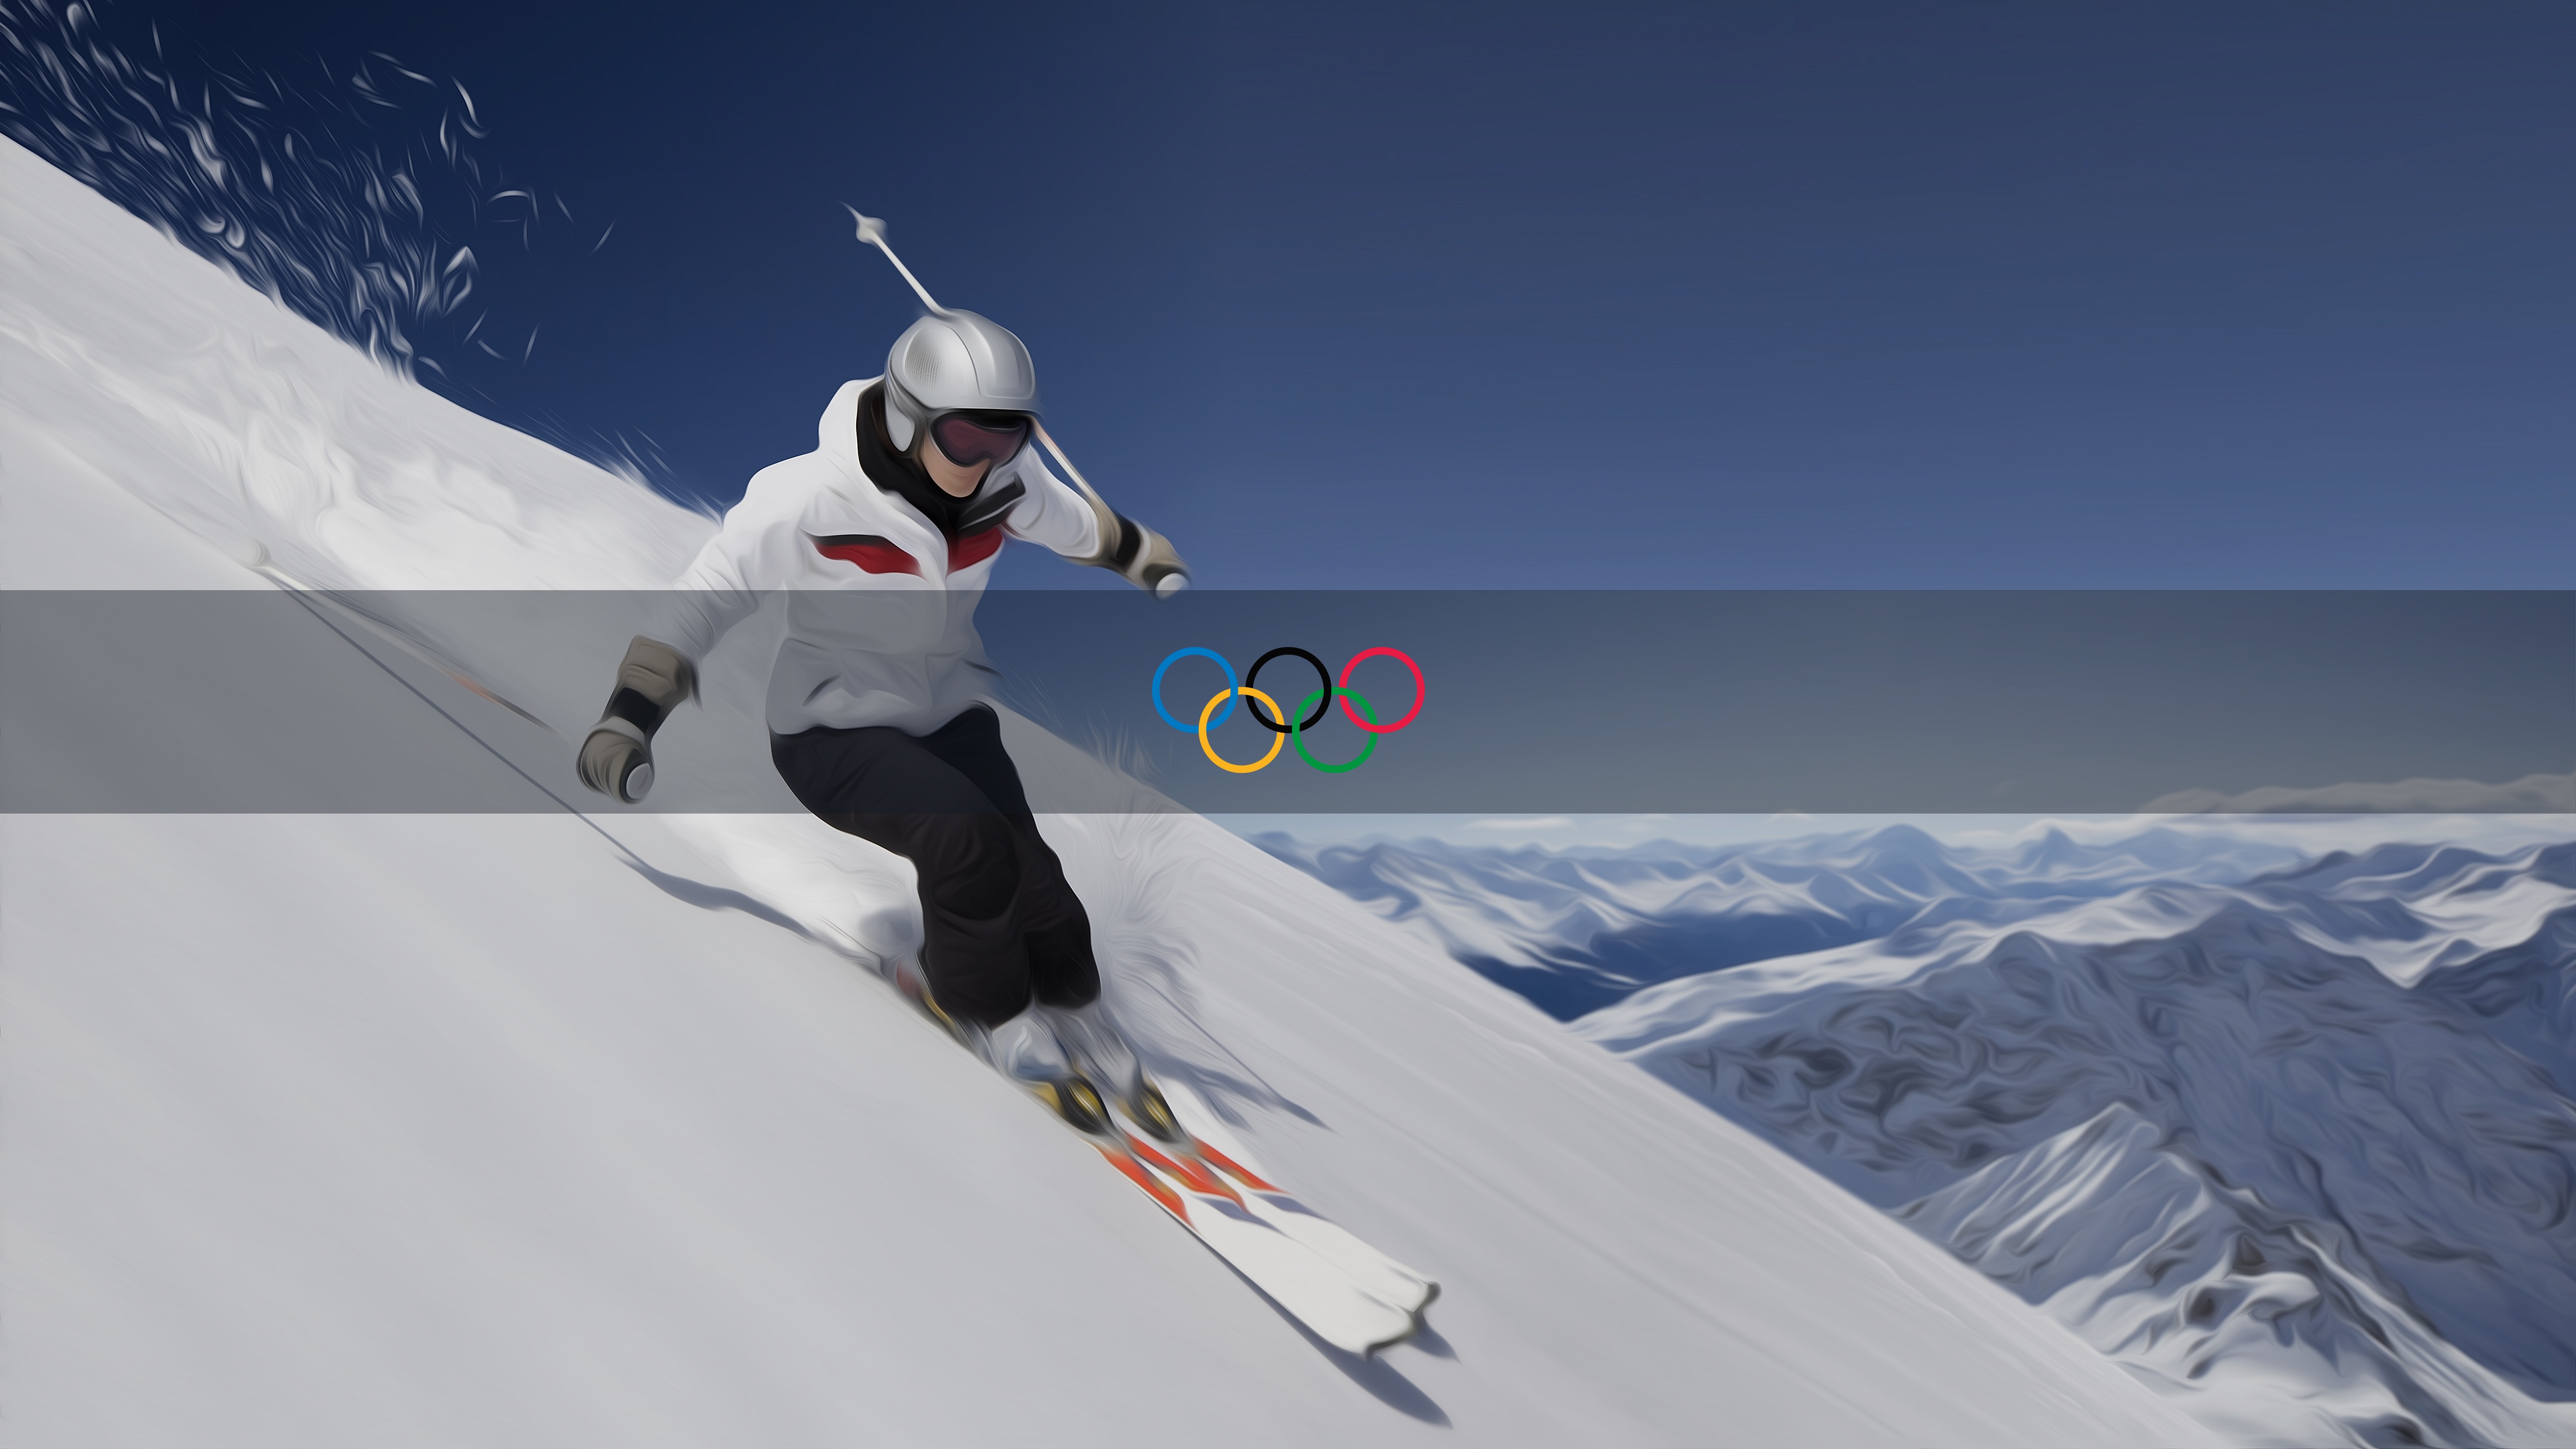 オリンピックの壁紙,雪,スキー,エクストリームスポーツ,屋外レクリエーション,フリースタイル・スキー